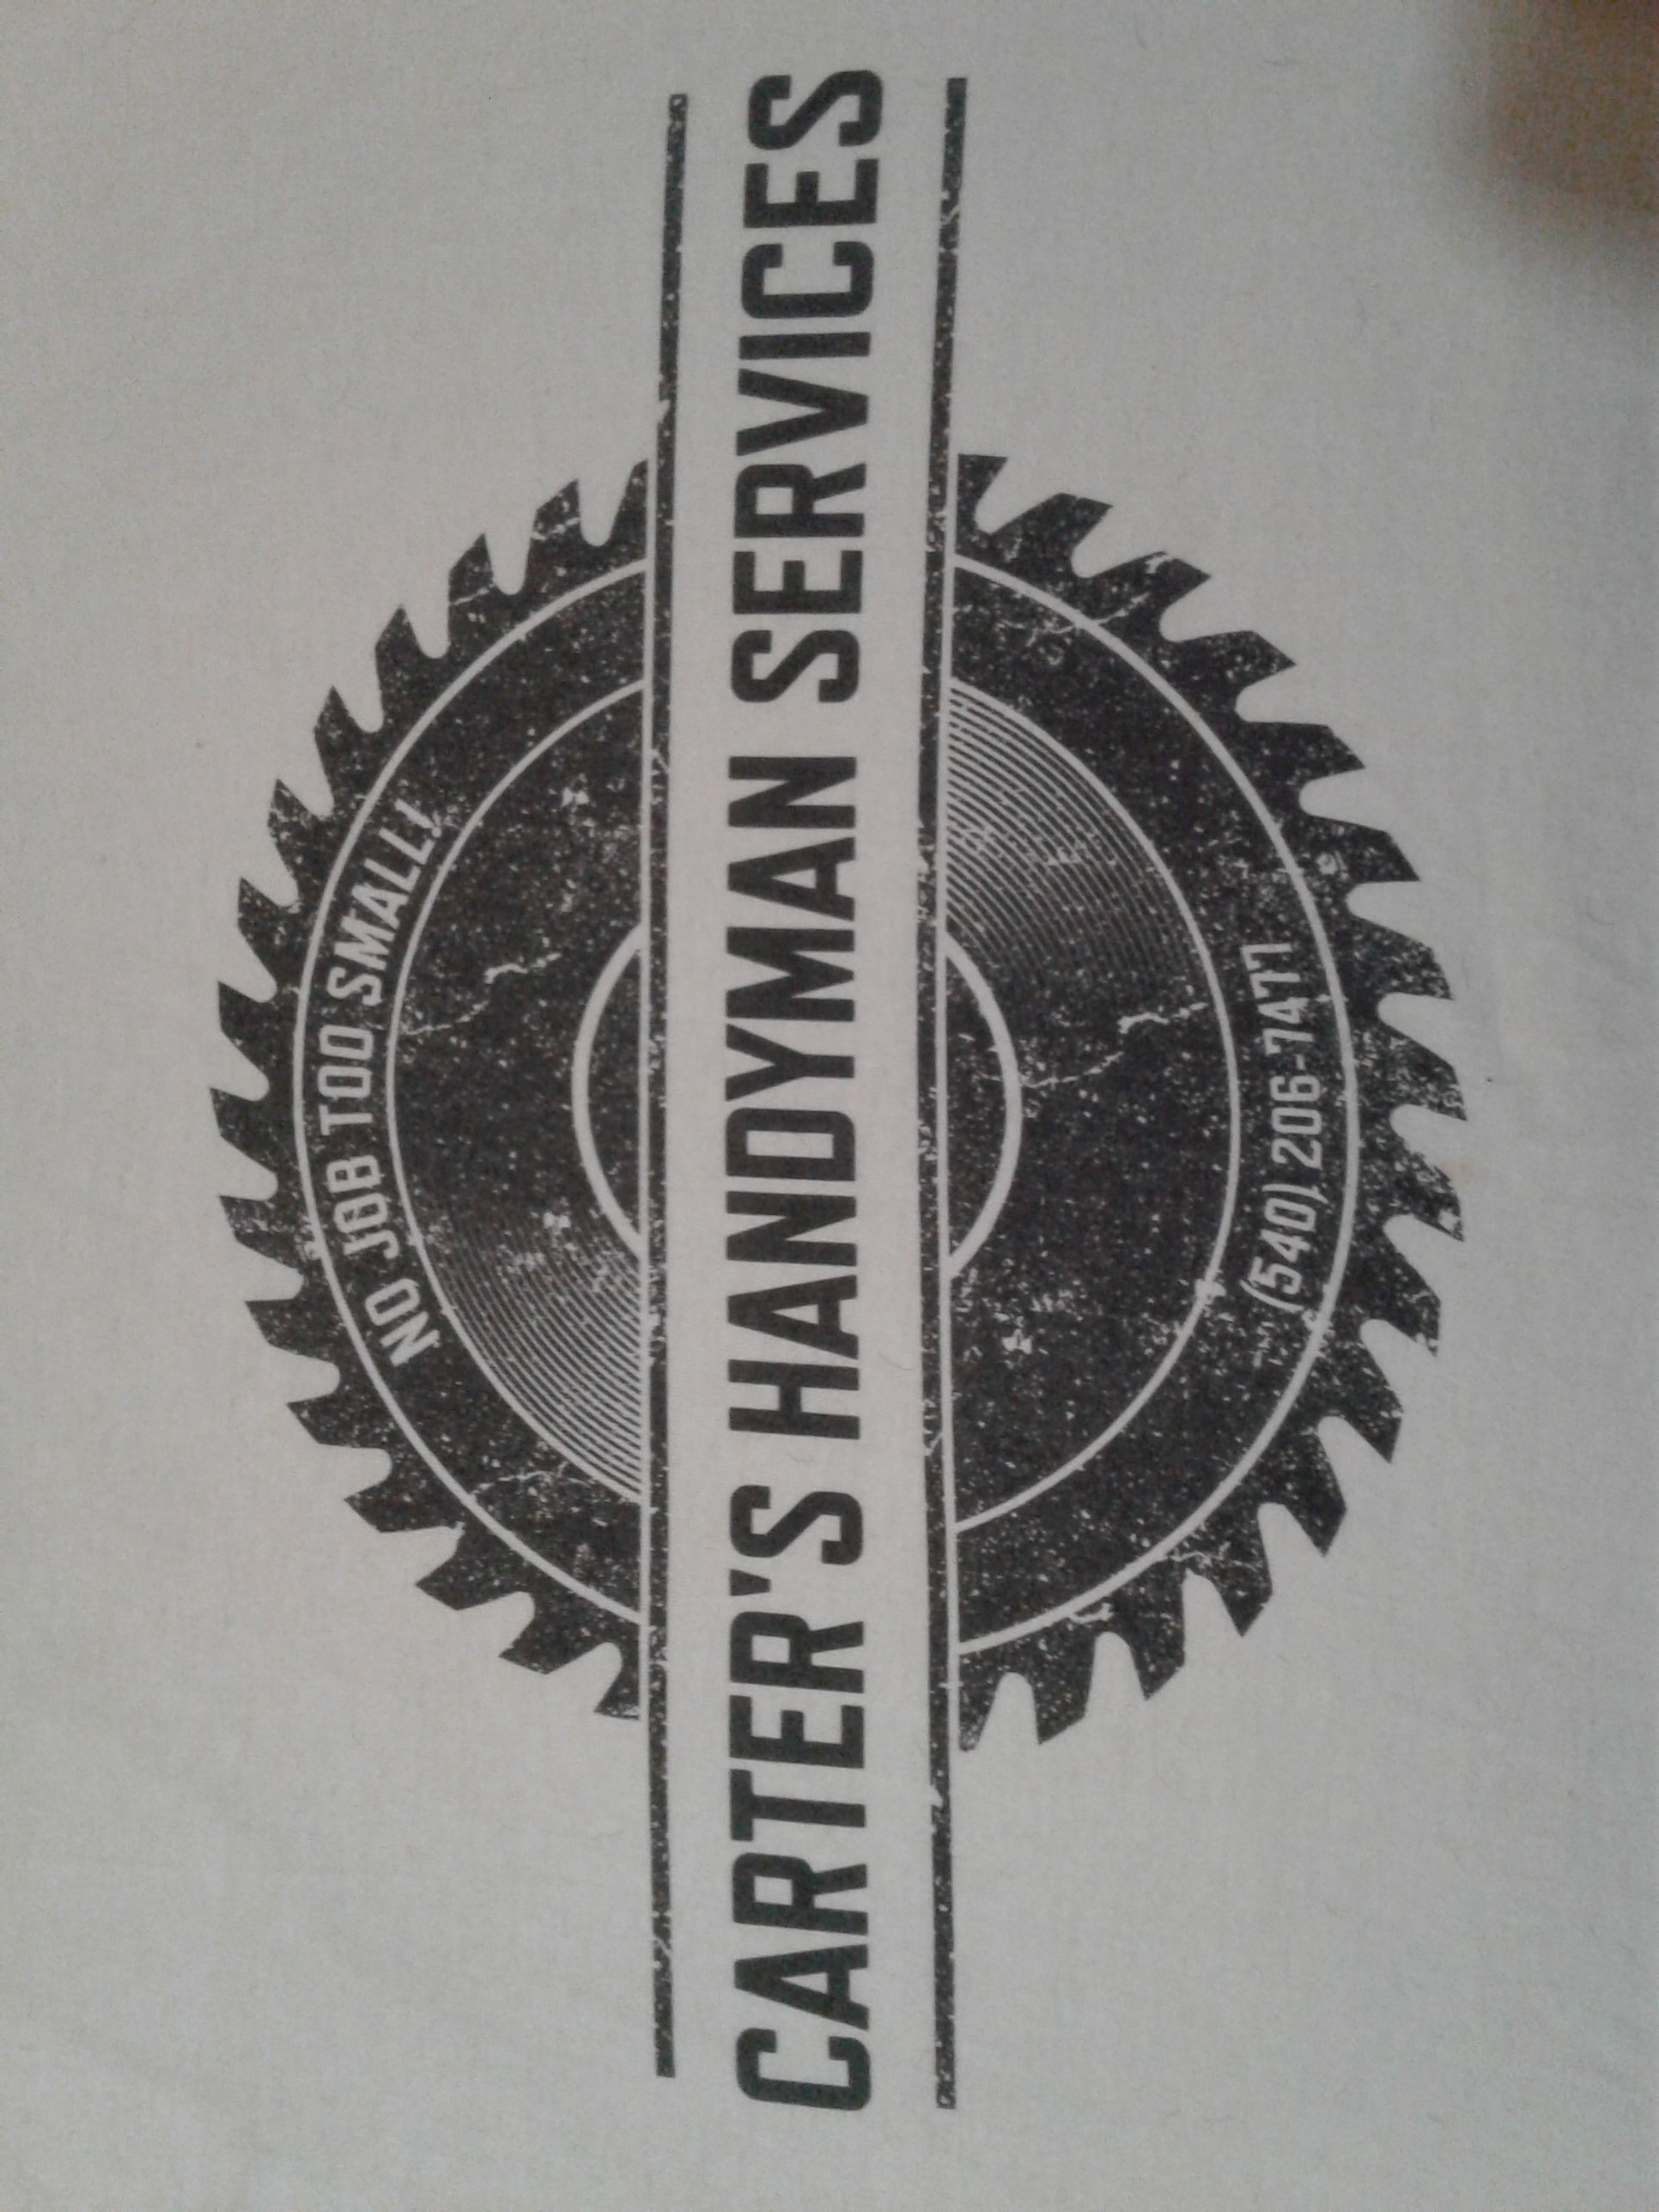 Carter's Handyman Services Logo